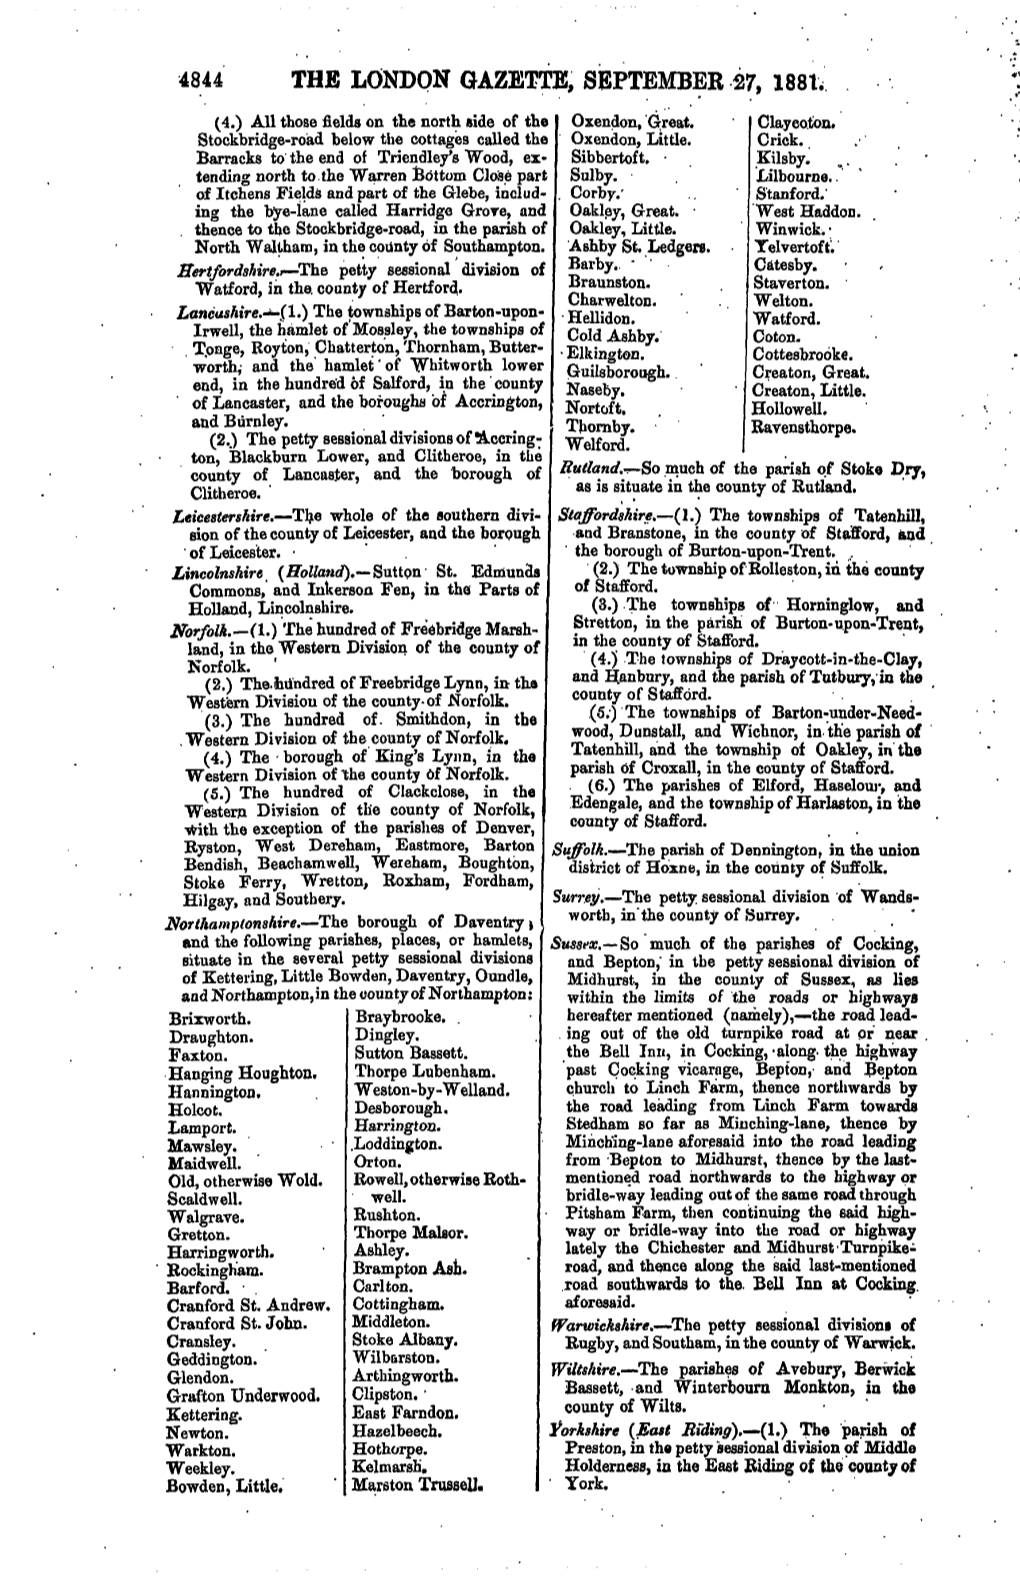 4844 the London Gazette, September 27, 1881